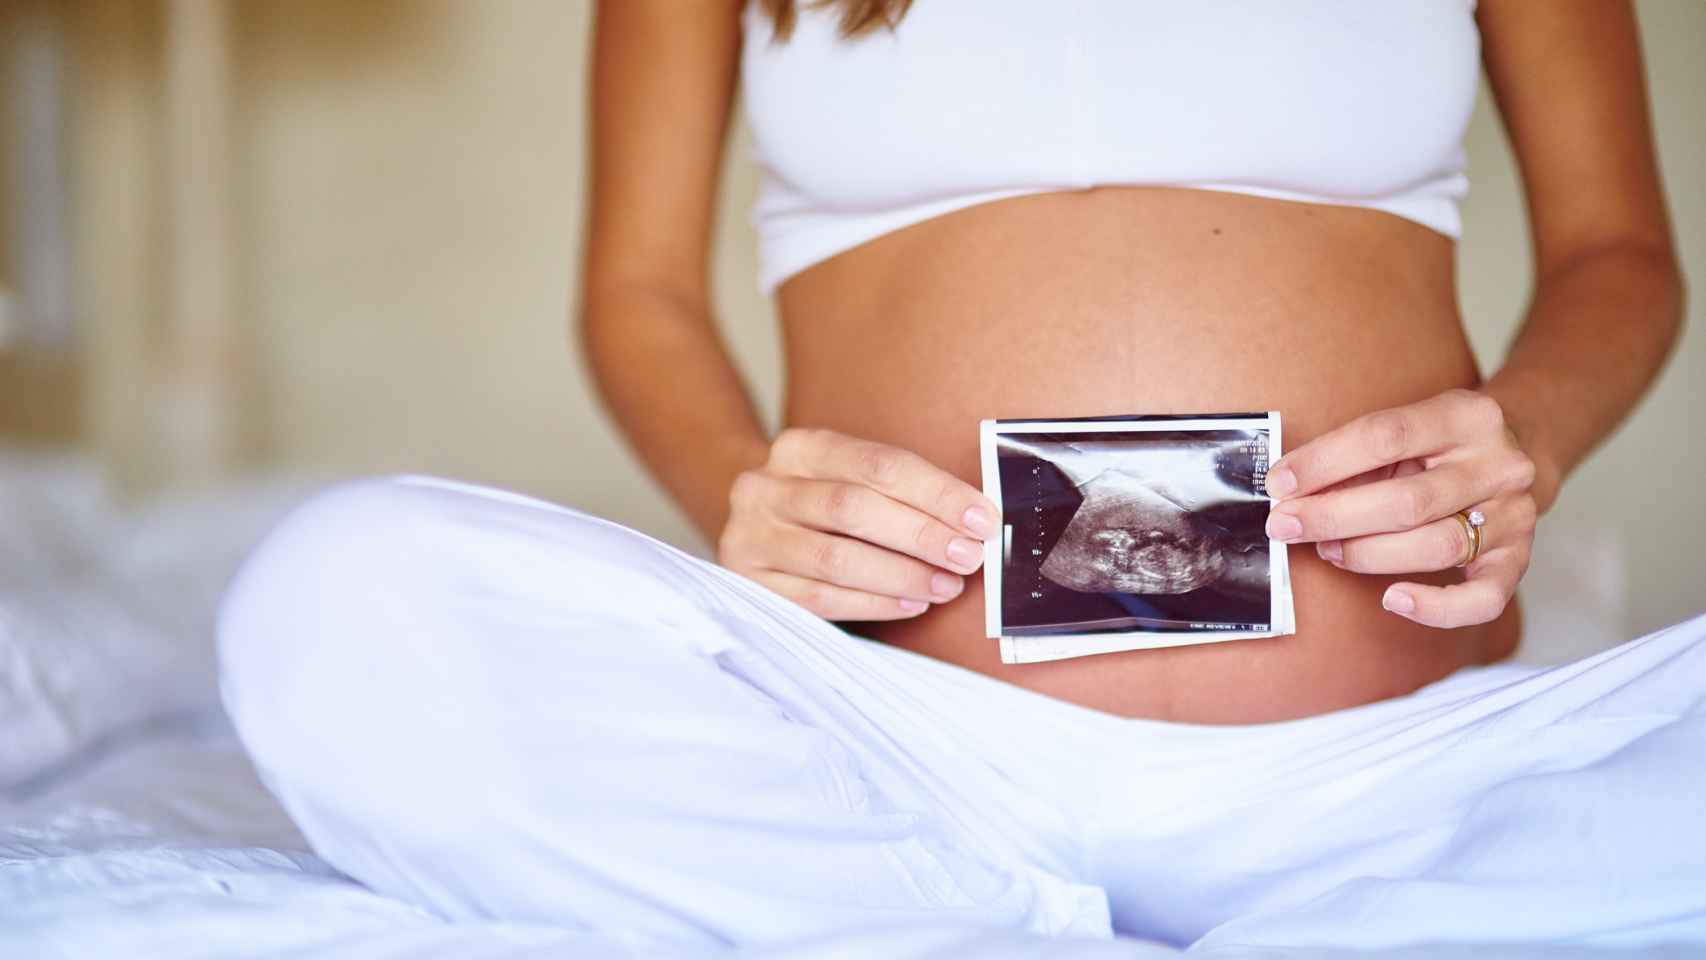 Básicos mamá: Ropa cómoda para el embarazo y la lactancia